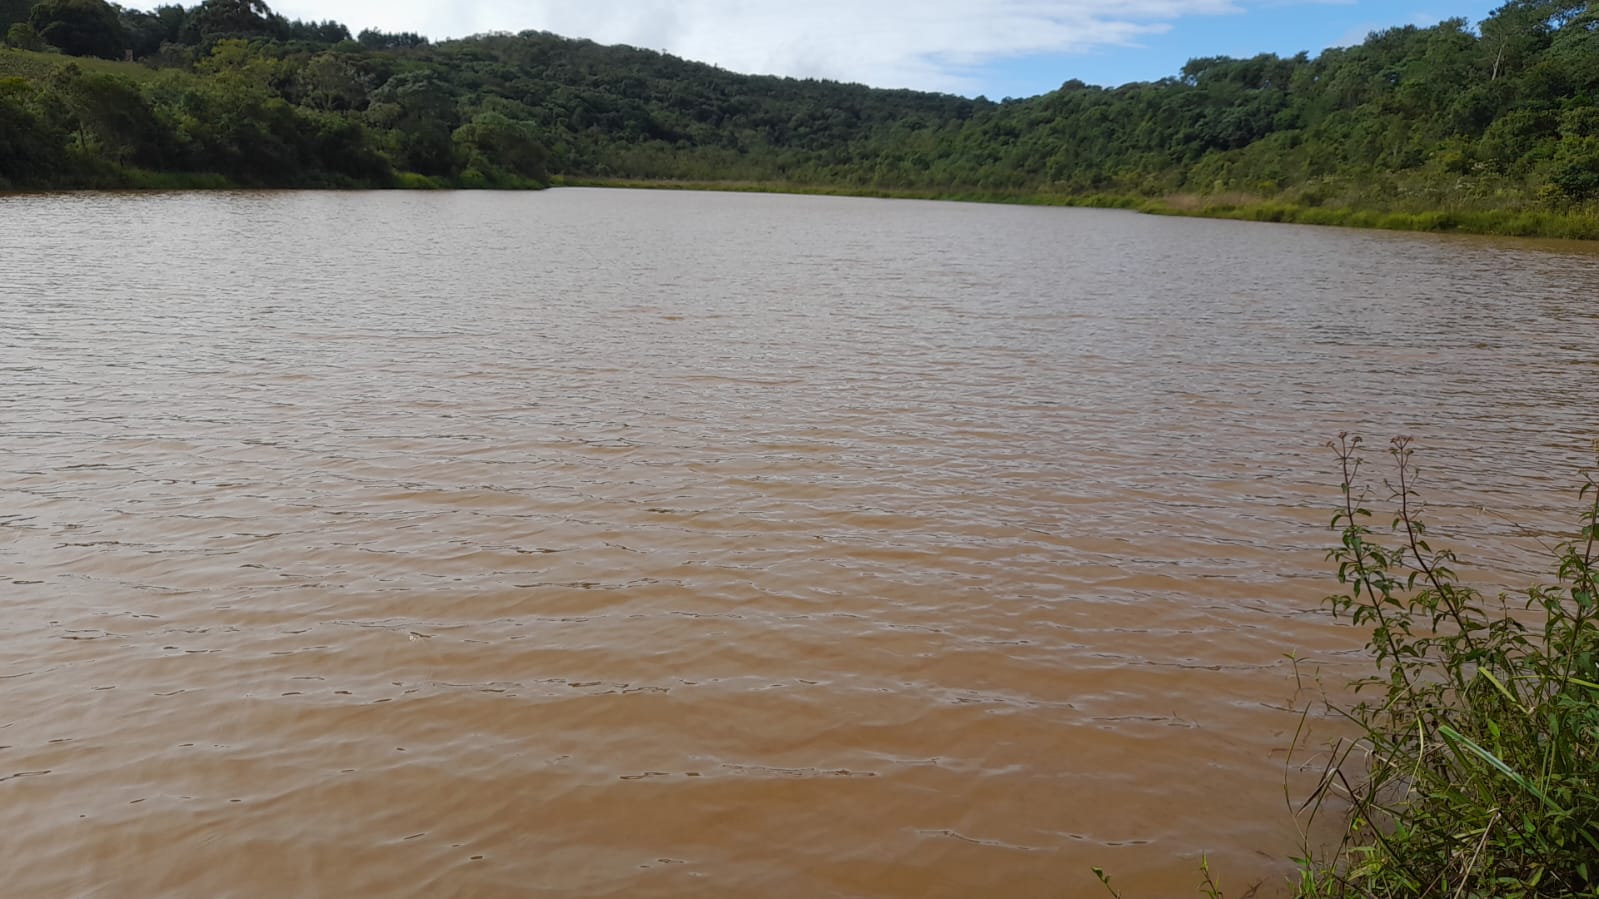 Linda fazenda com água ,luz topografia boa, vista panorâmica | Camanducaia - MG | código 899